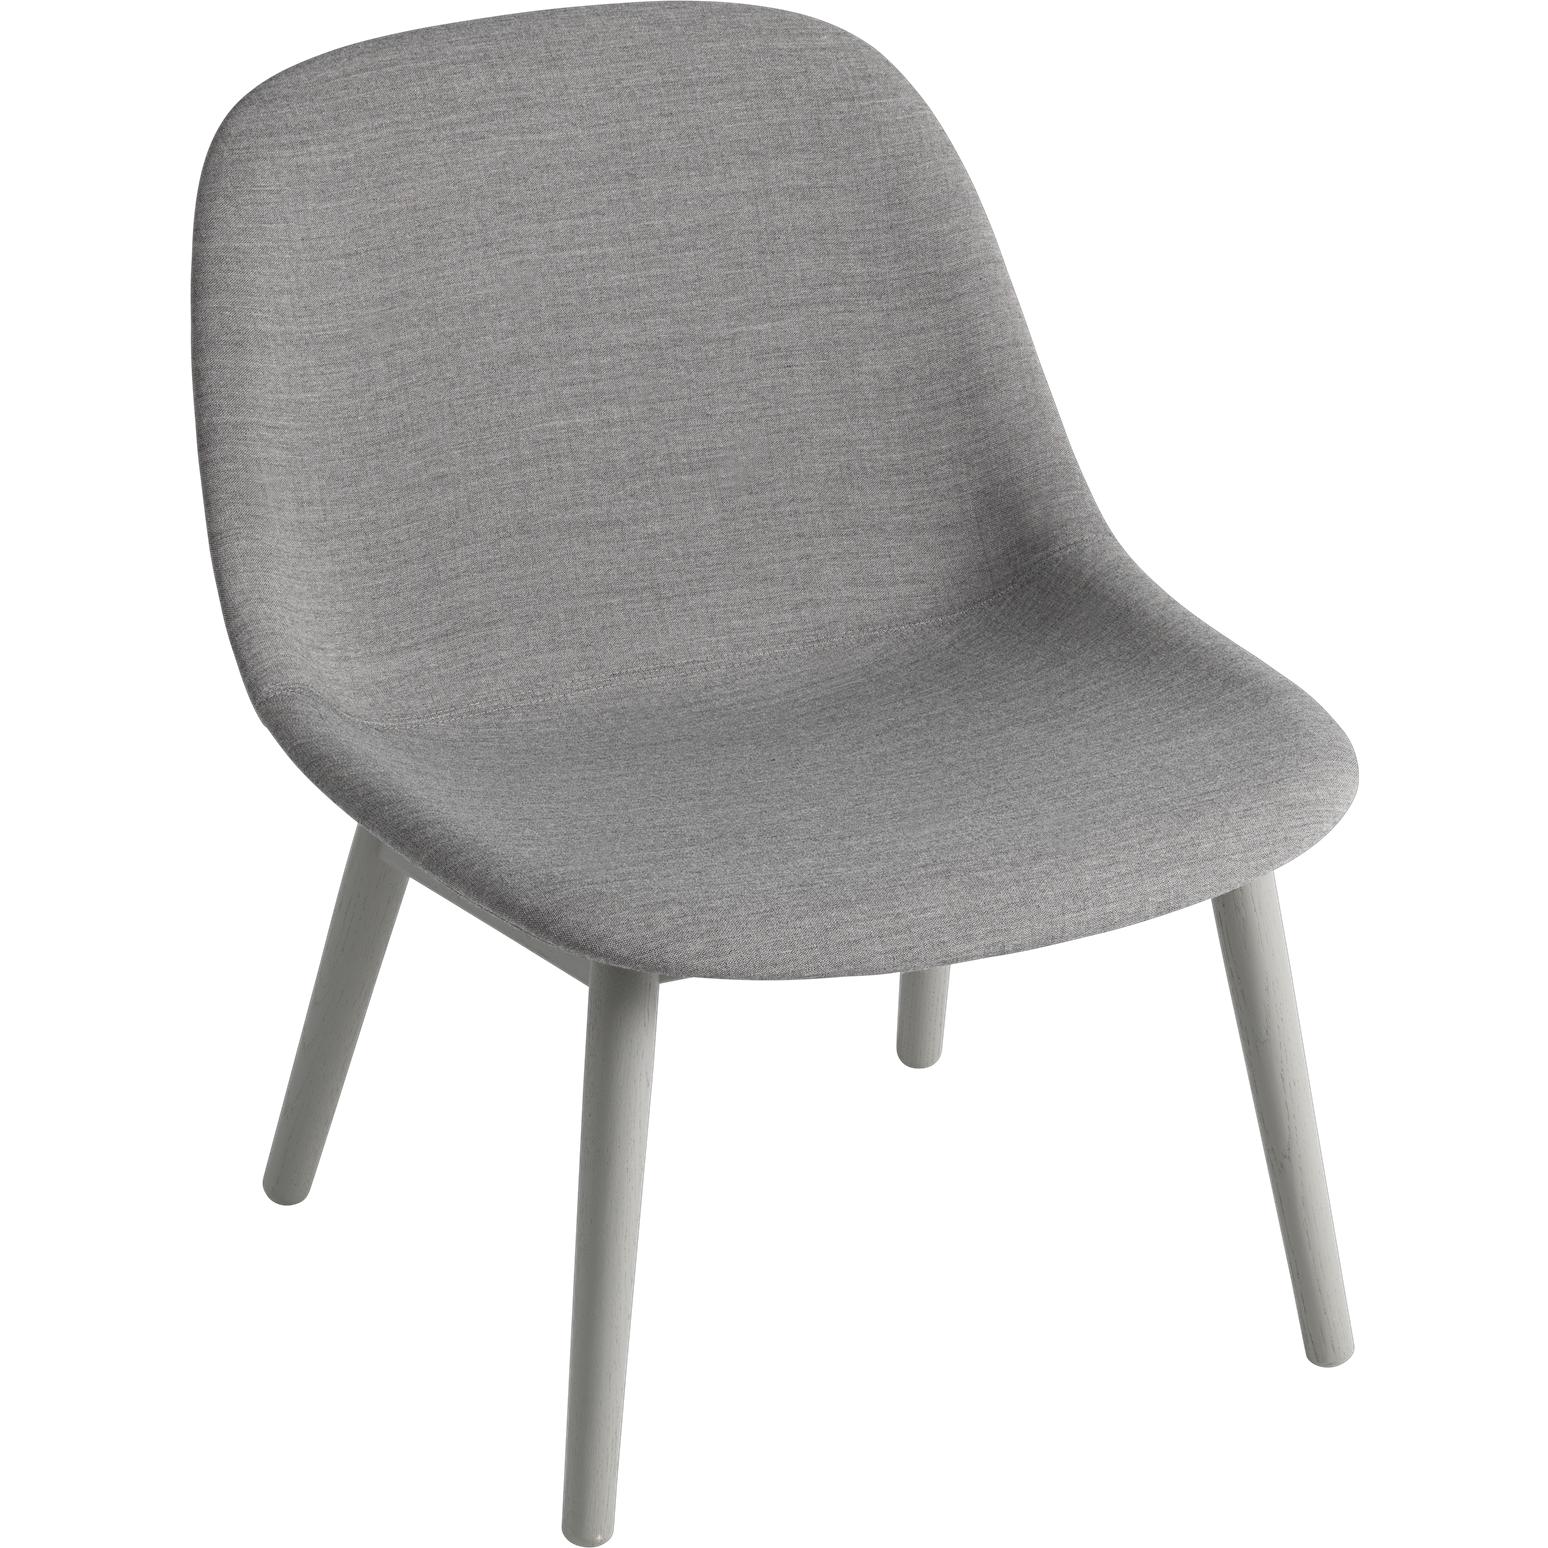 Muuto Fiber Lounge stoel houten benen, stoffen stoel, grijs/ remix 133